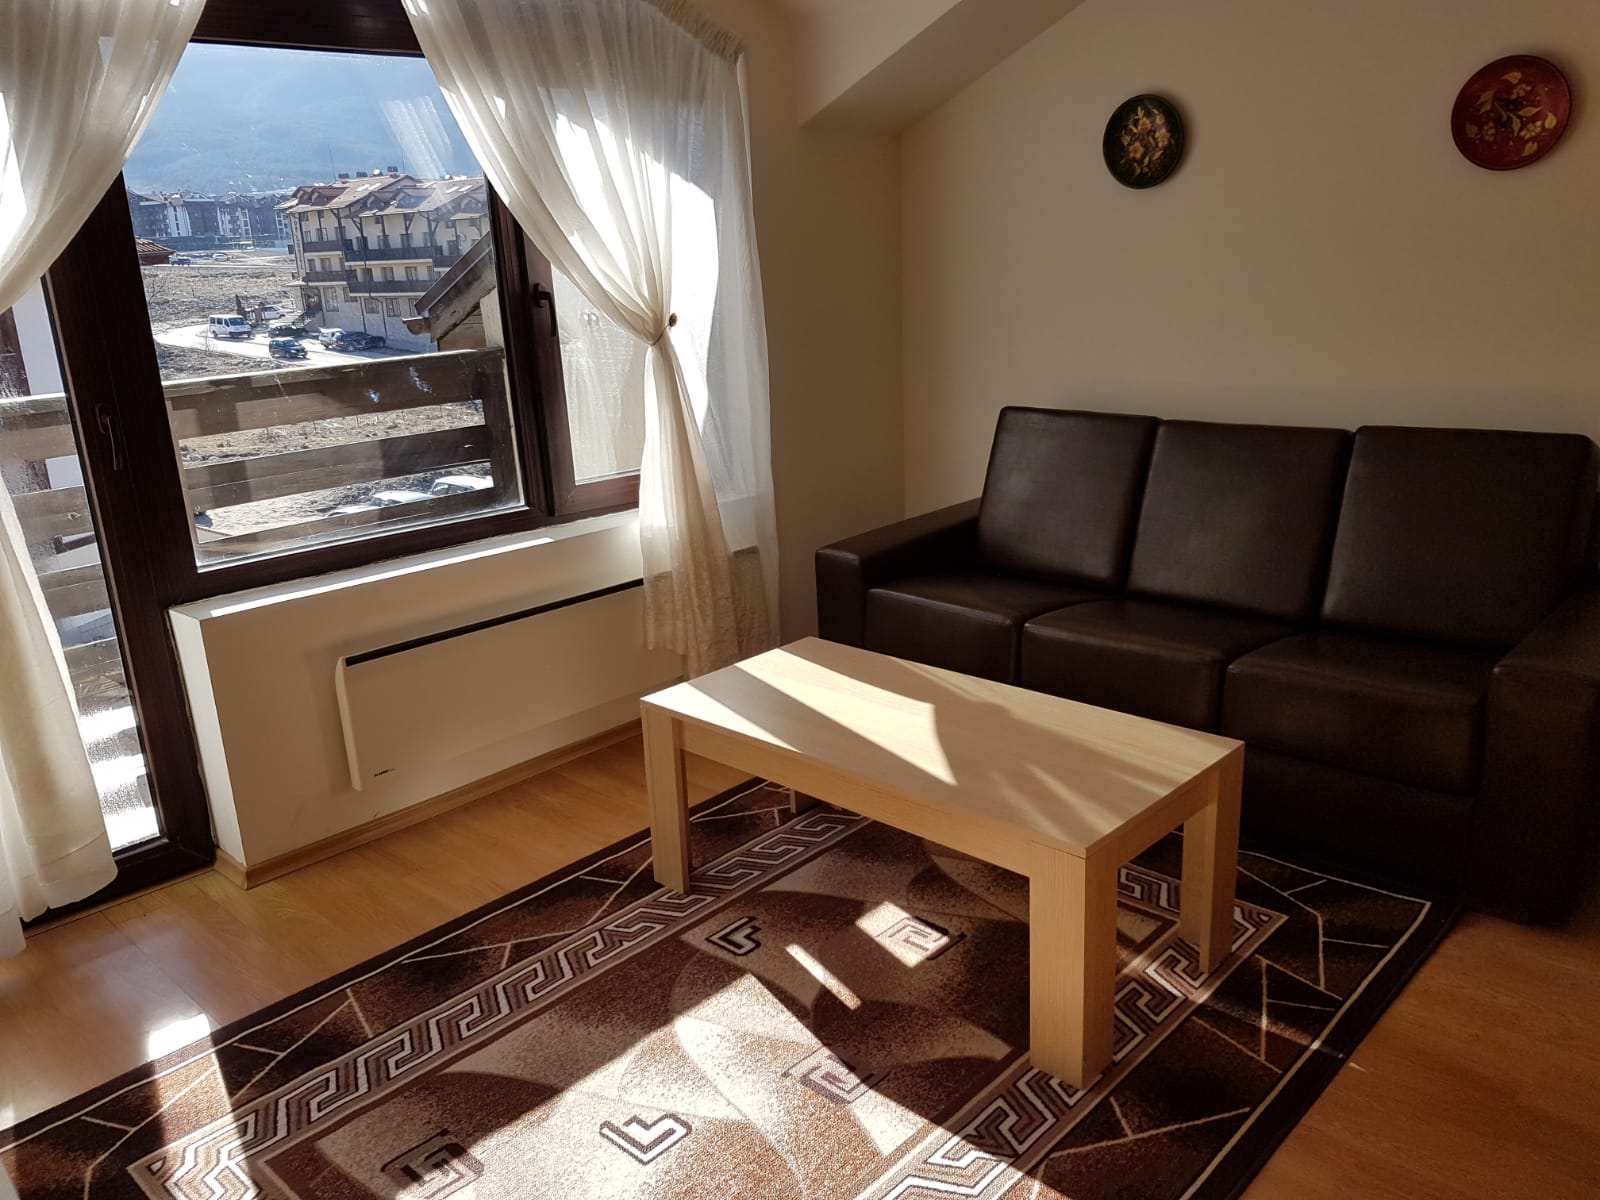 Двустаен апартамент за отдаване под наем с гледка към Пирин планина в Банско